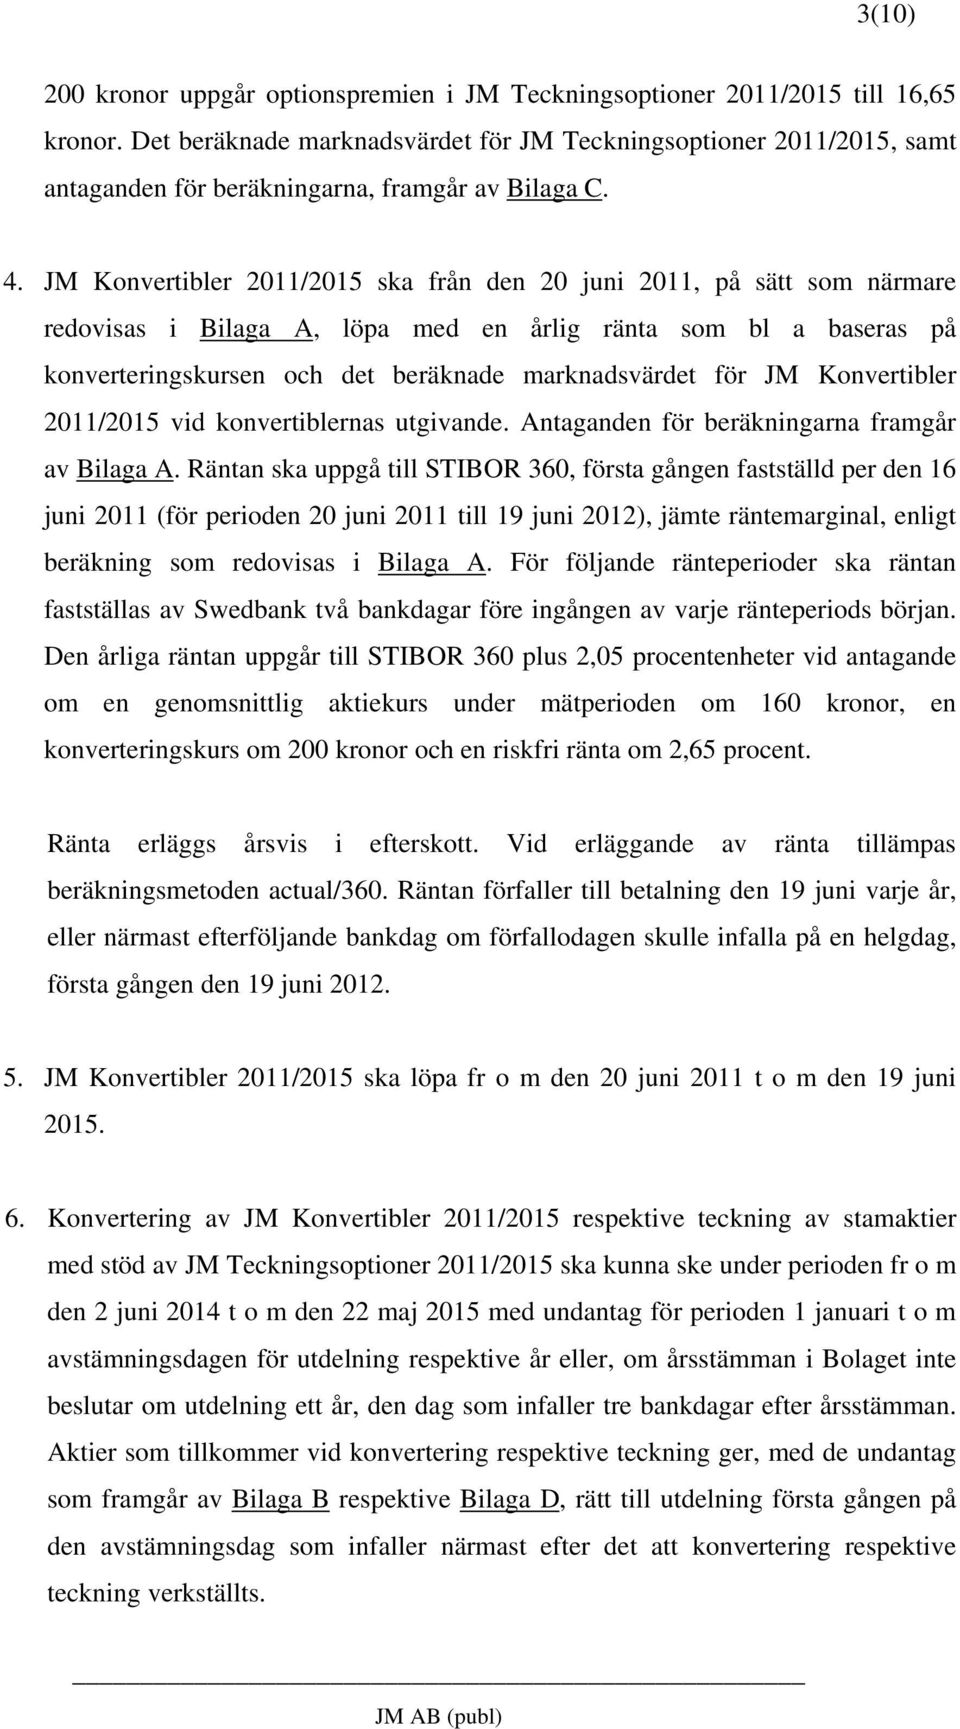 JM Konvertibler 2011/2015 ska från den 20 juni 2011, på sätt som närmare redovisas i Bilaga A, löpa med en årlig ränta som bl a baseras på konverteringskursen och det beräknade marknadsvärdet för JM